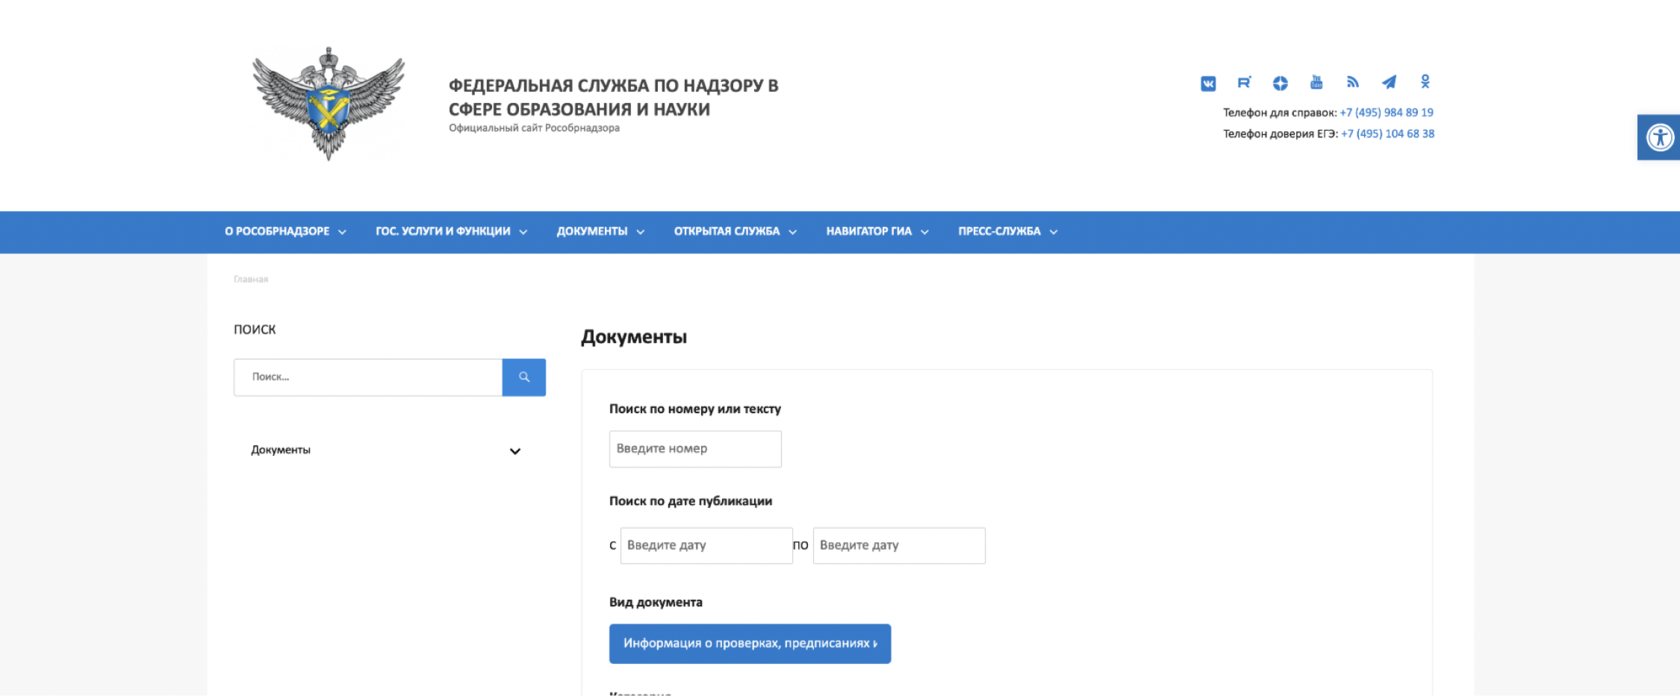 Официальный сайт Рособрнадзора